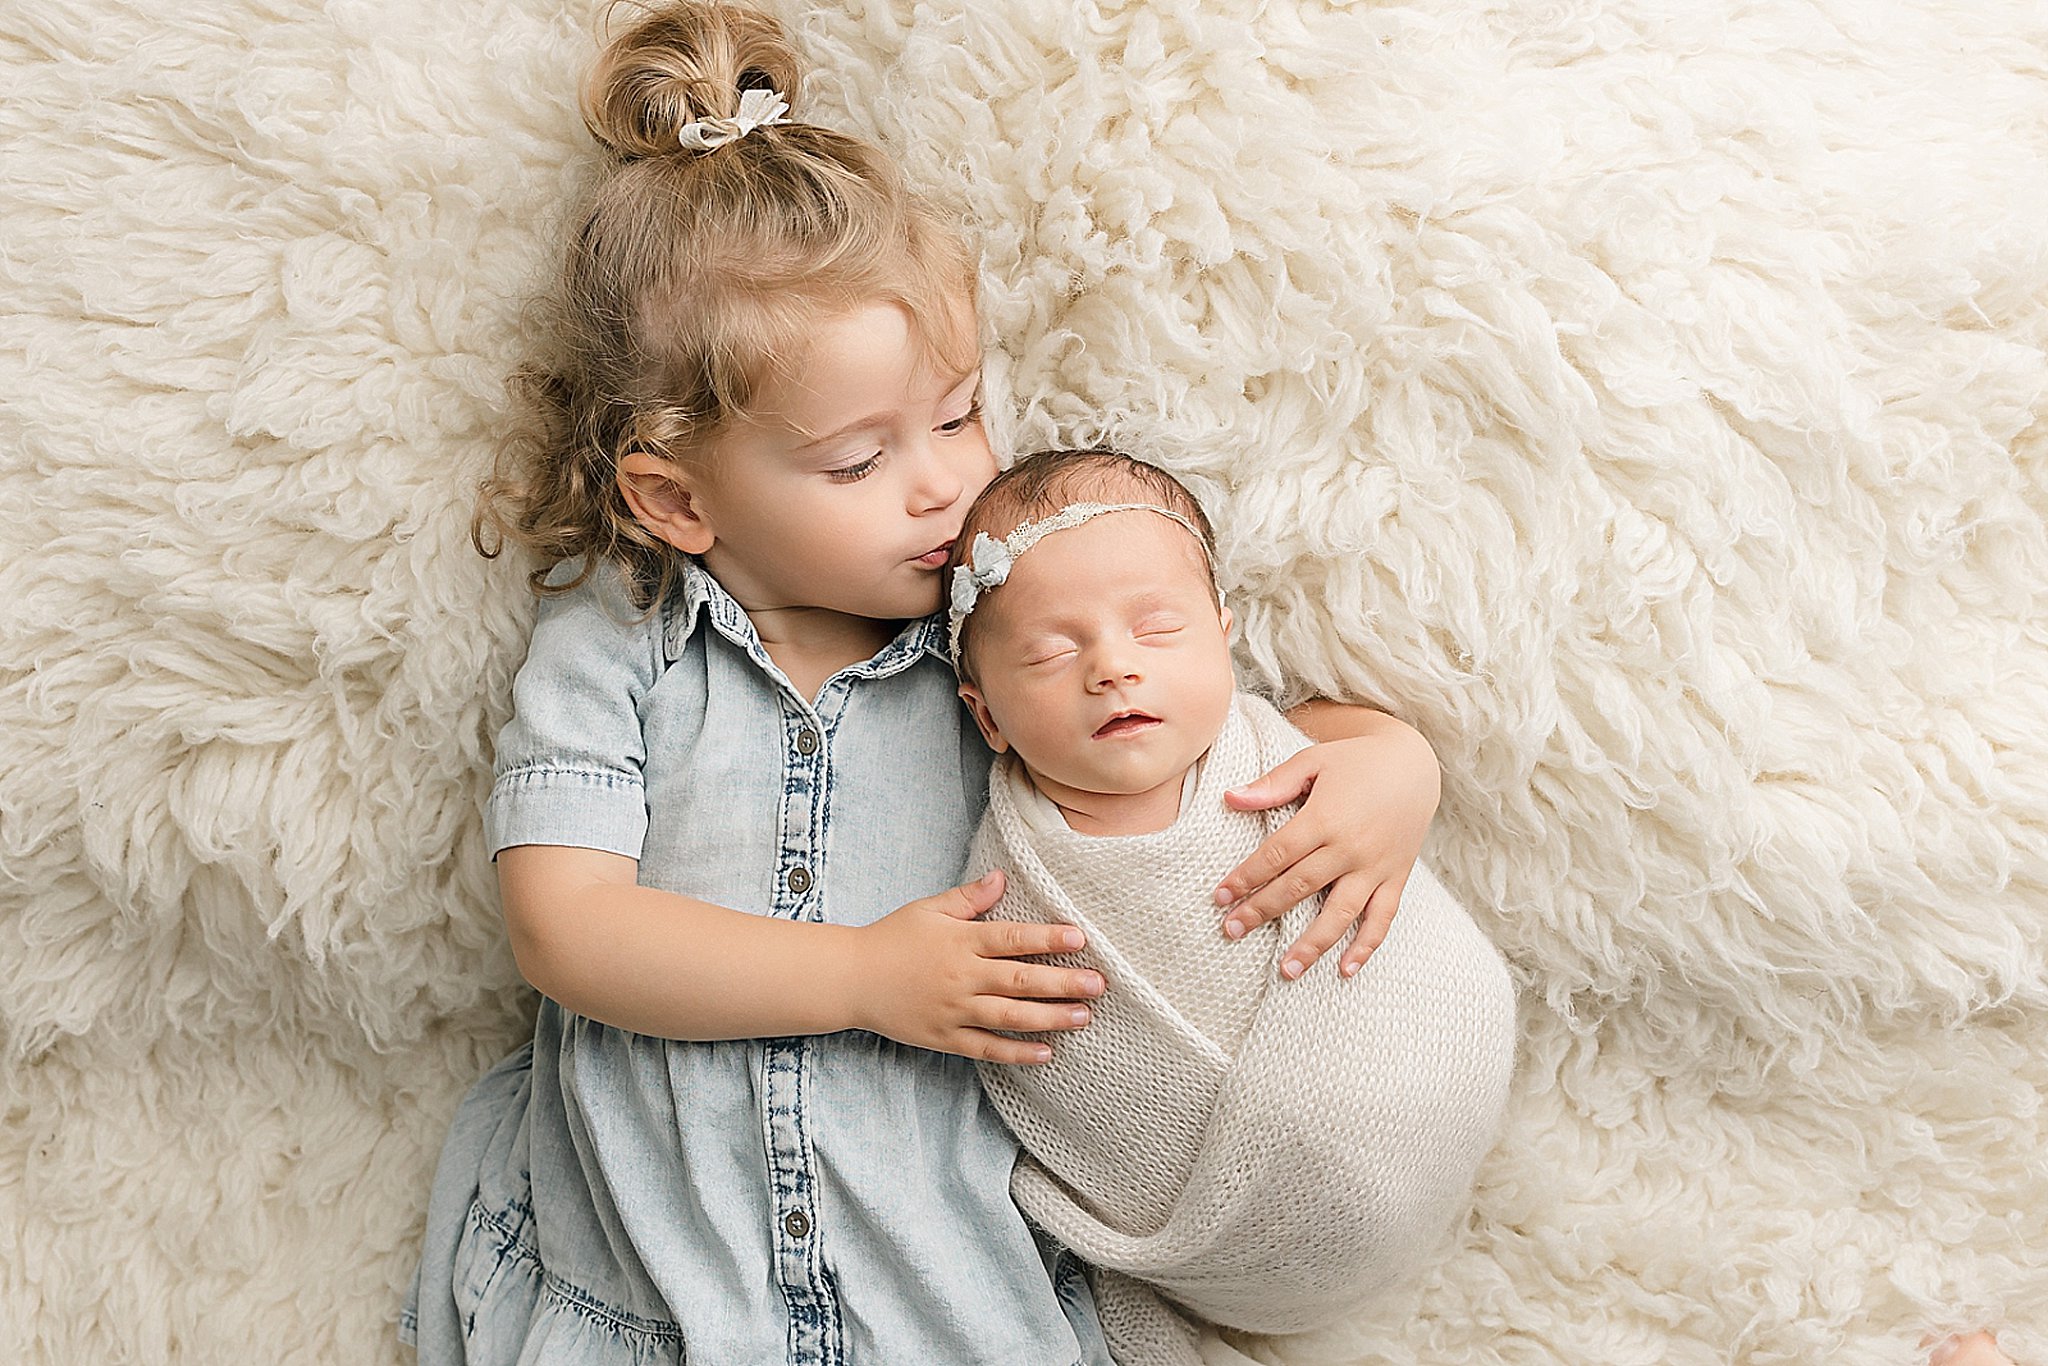 little girl kissing her newborn sister on the head